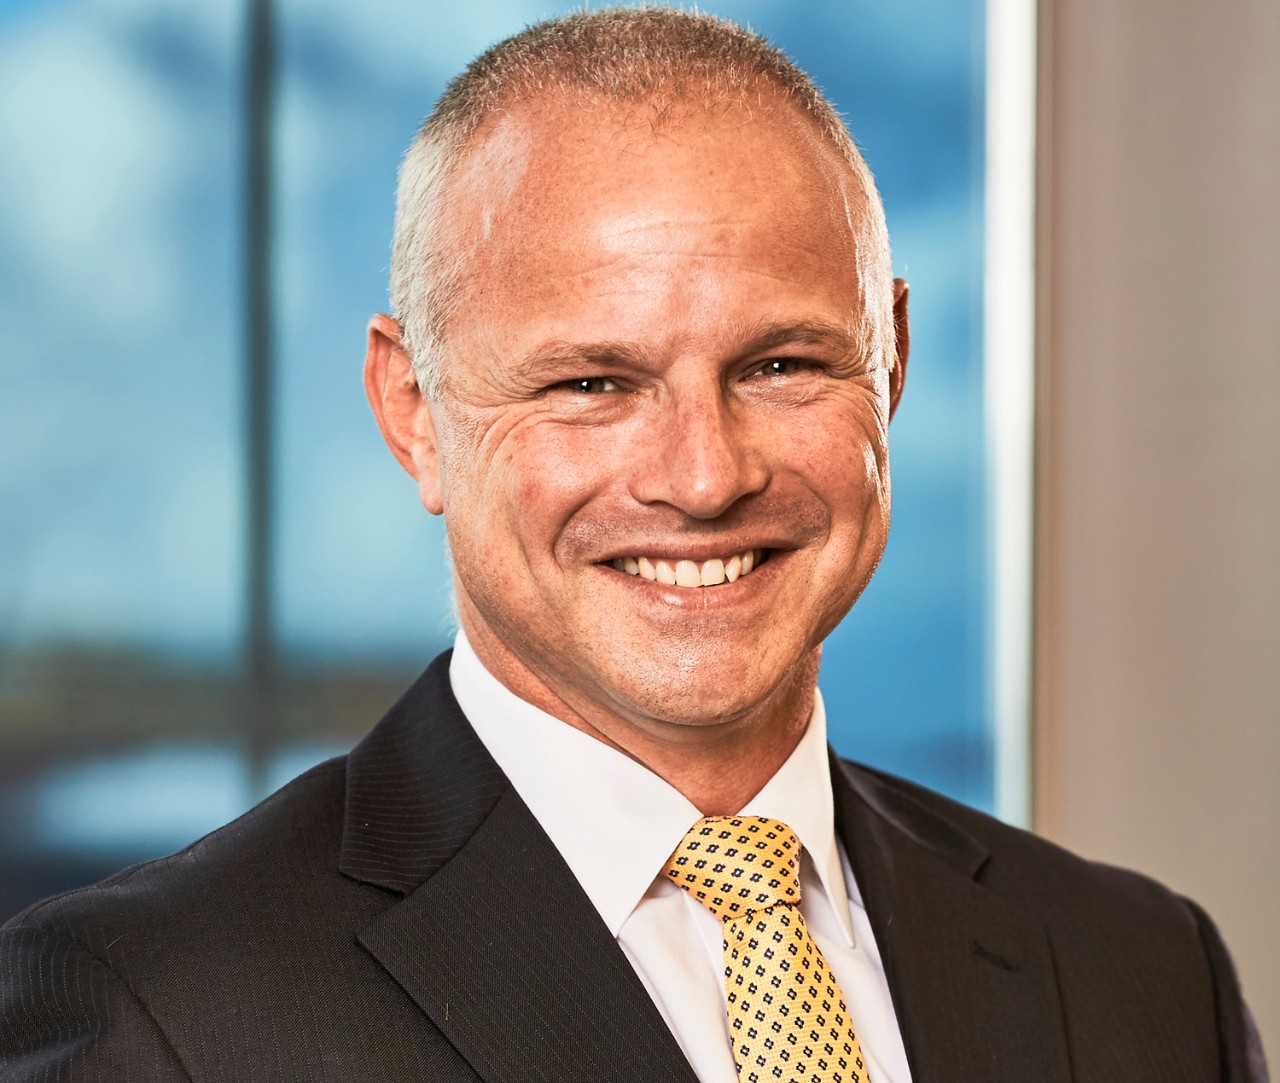 Allianz Australia names Richard Feledy as new CEO to succeed Niran Peiris